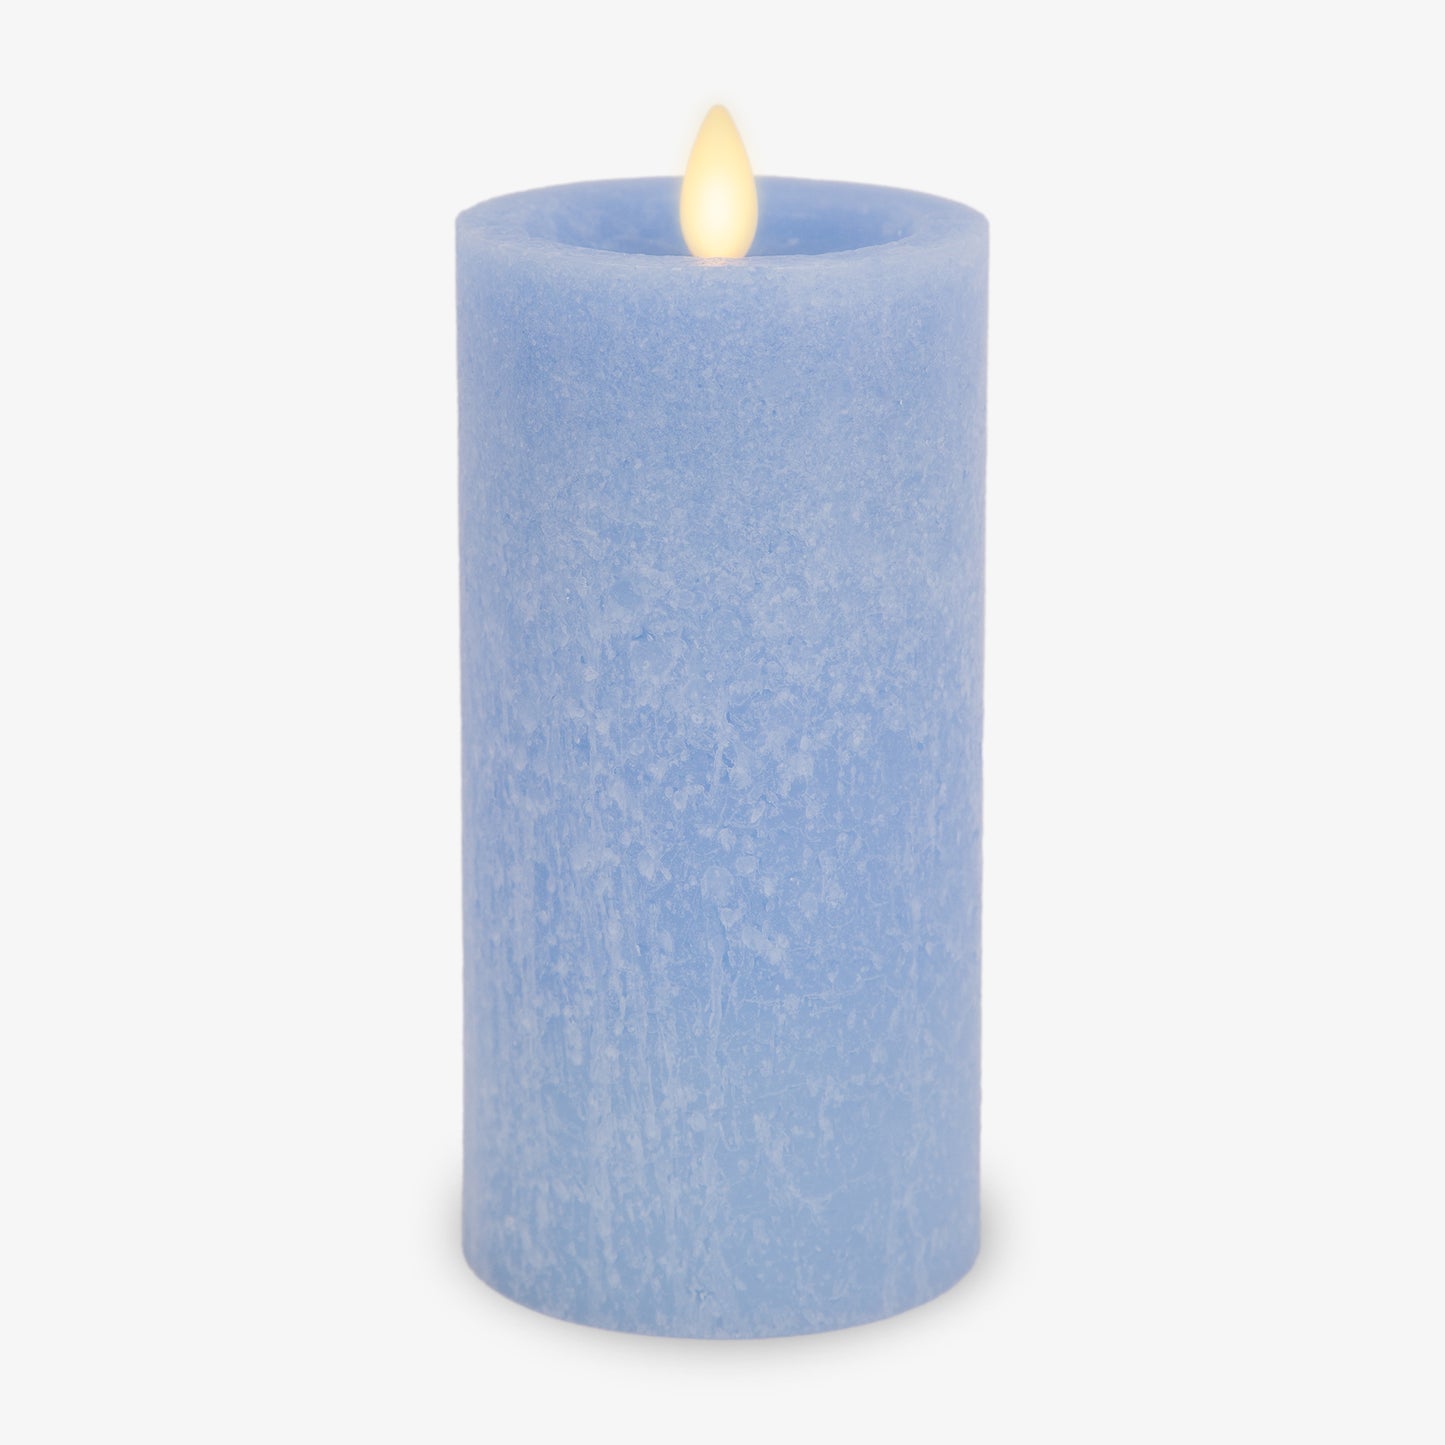 Cornflower Seaglass Flameless Candle Pillar